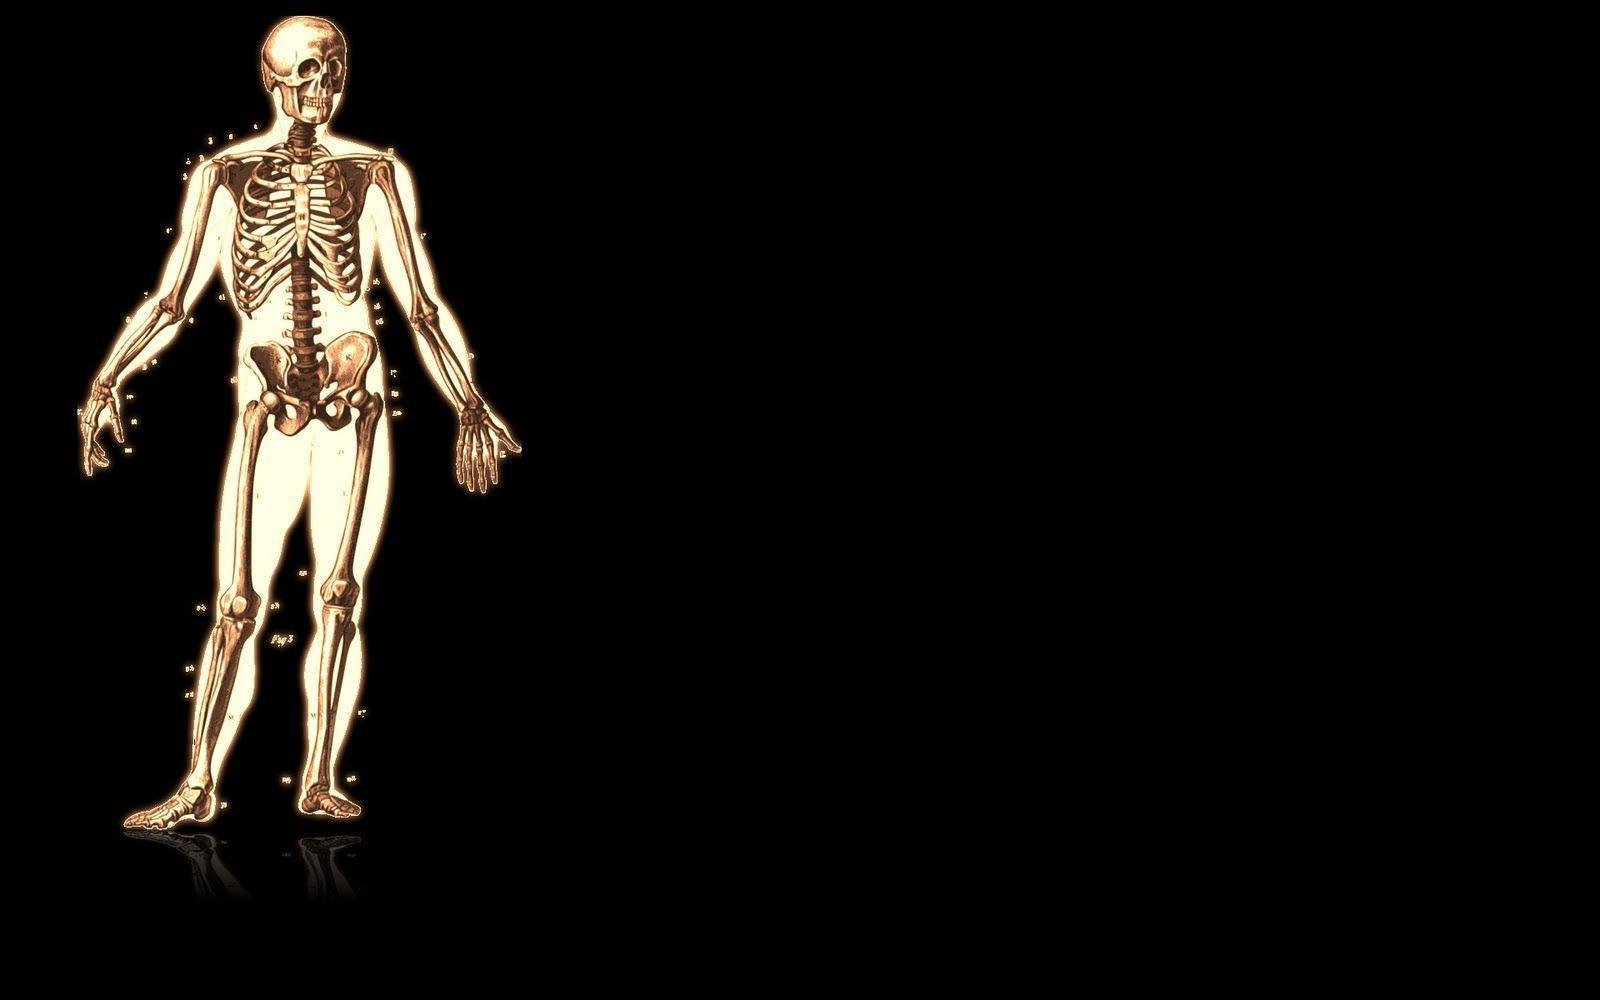 Wallpaper Skeleton. Black Wallpaper For Desktop